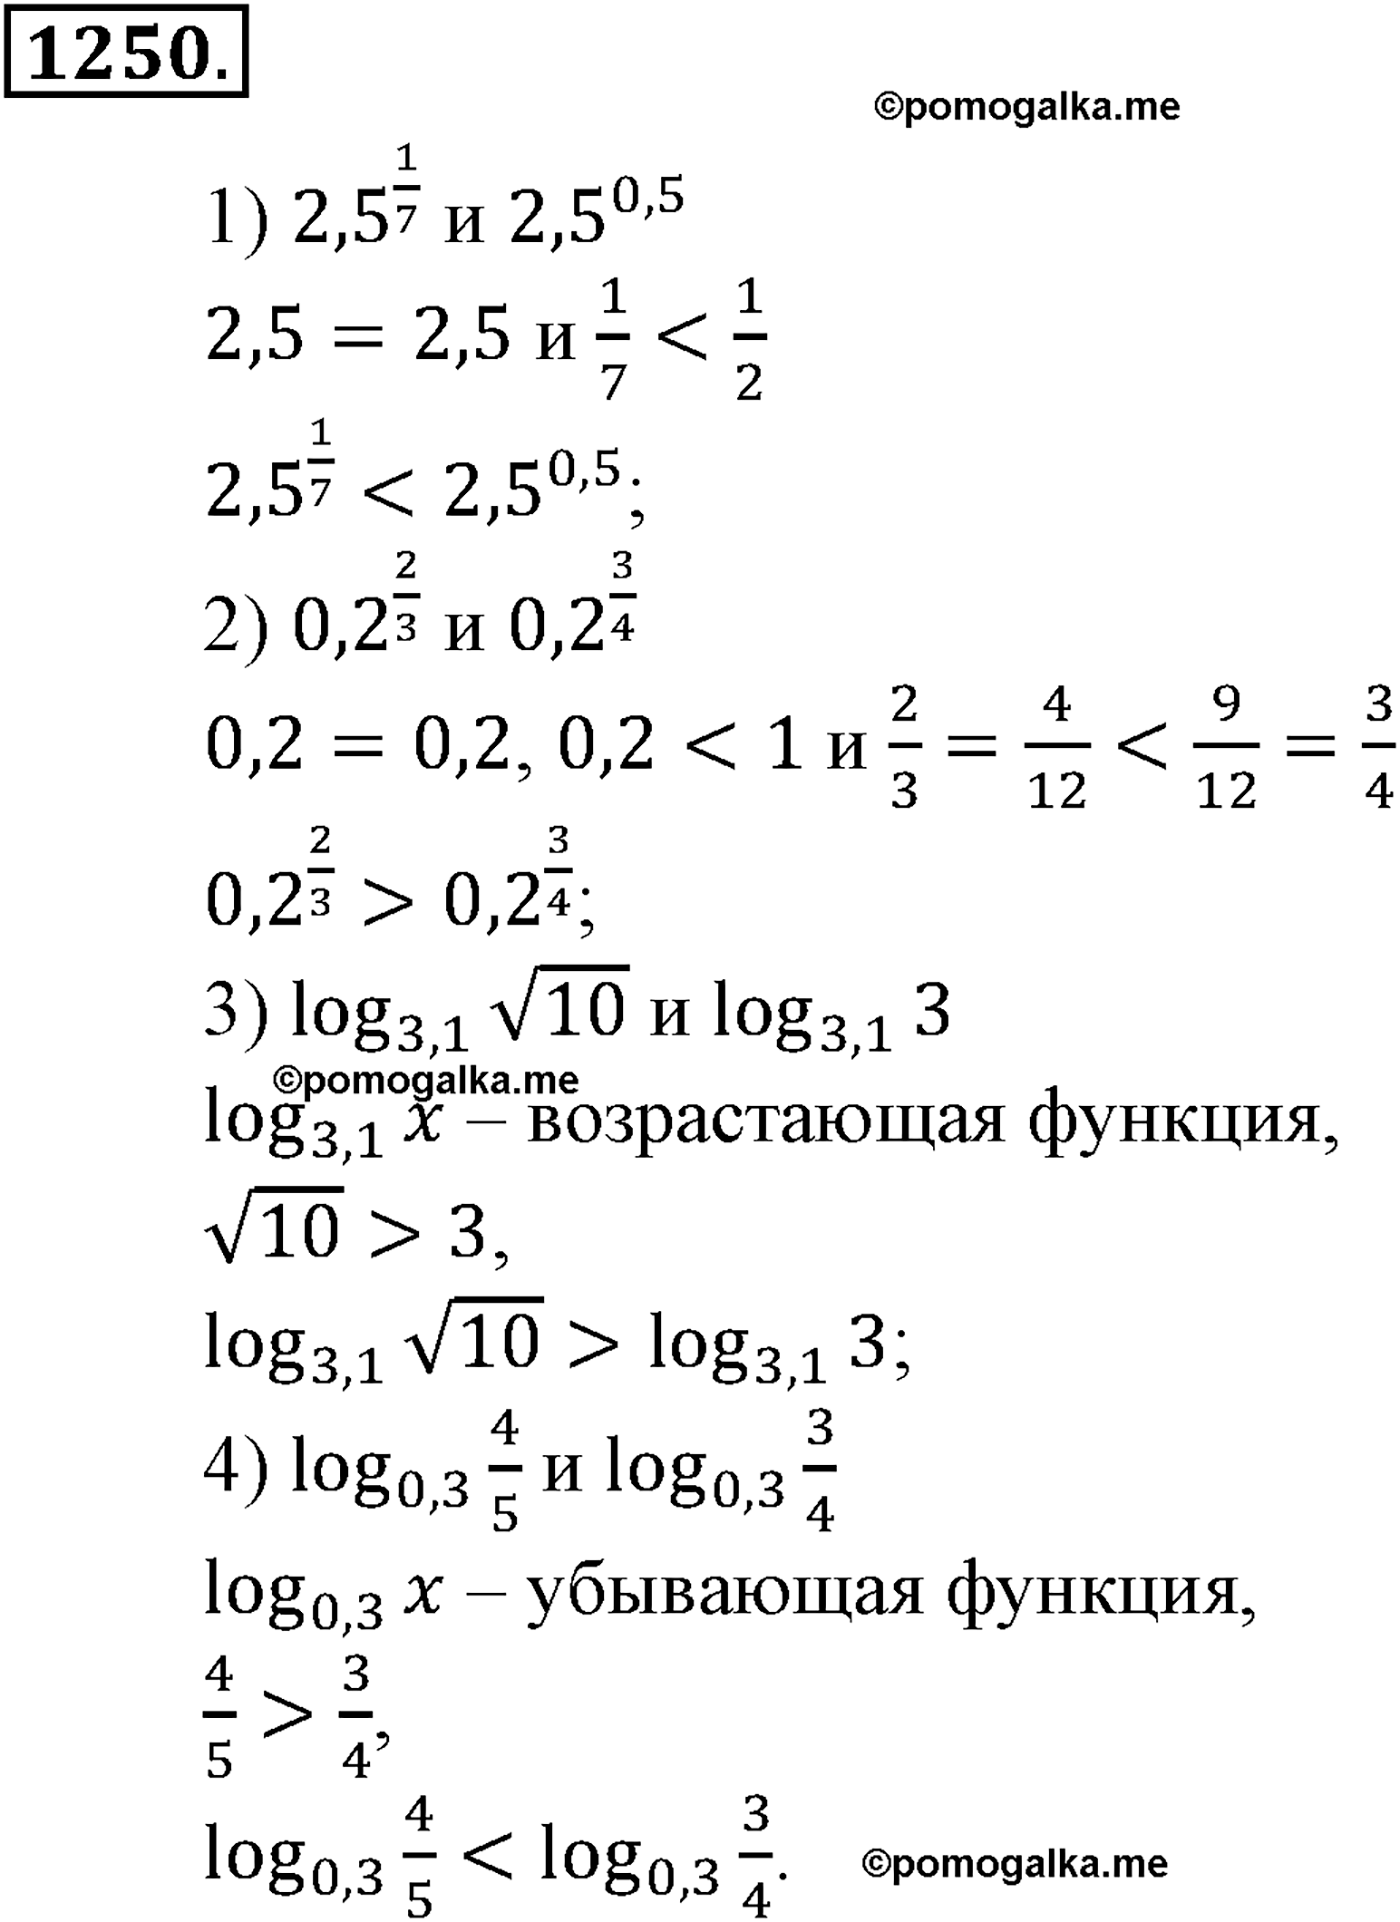 разбор задачи №1250 по алгебре за 10-11 класс из учебника Алимова, Колягина